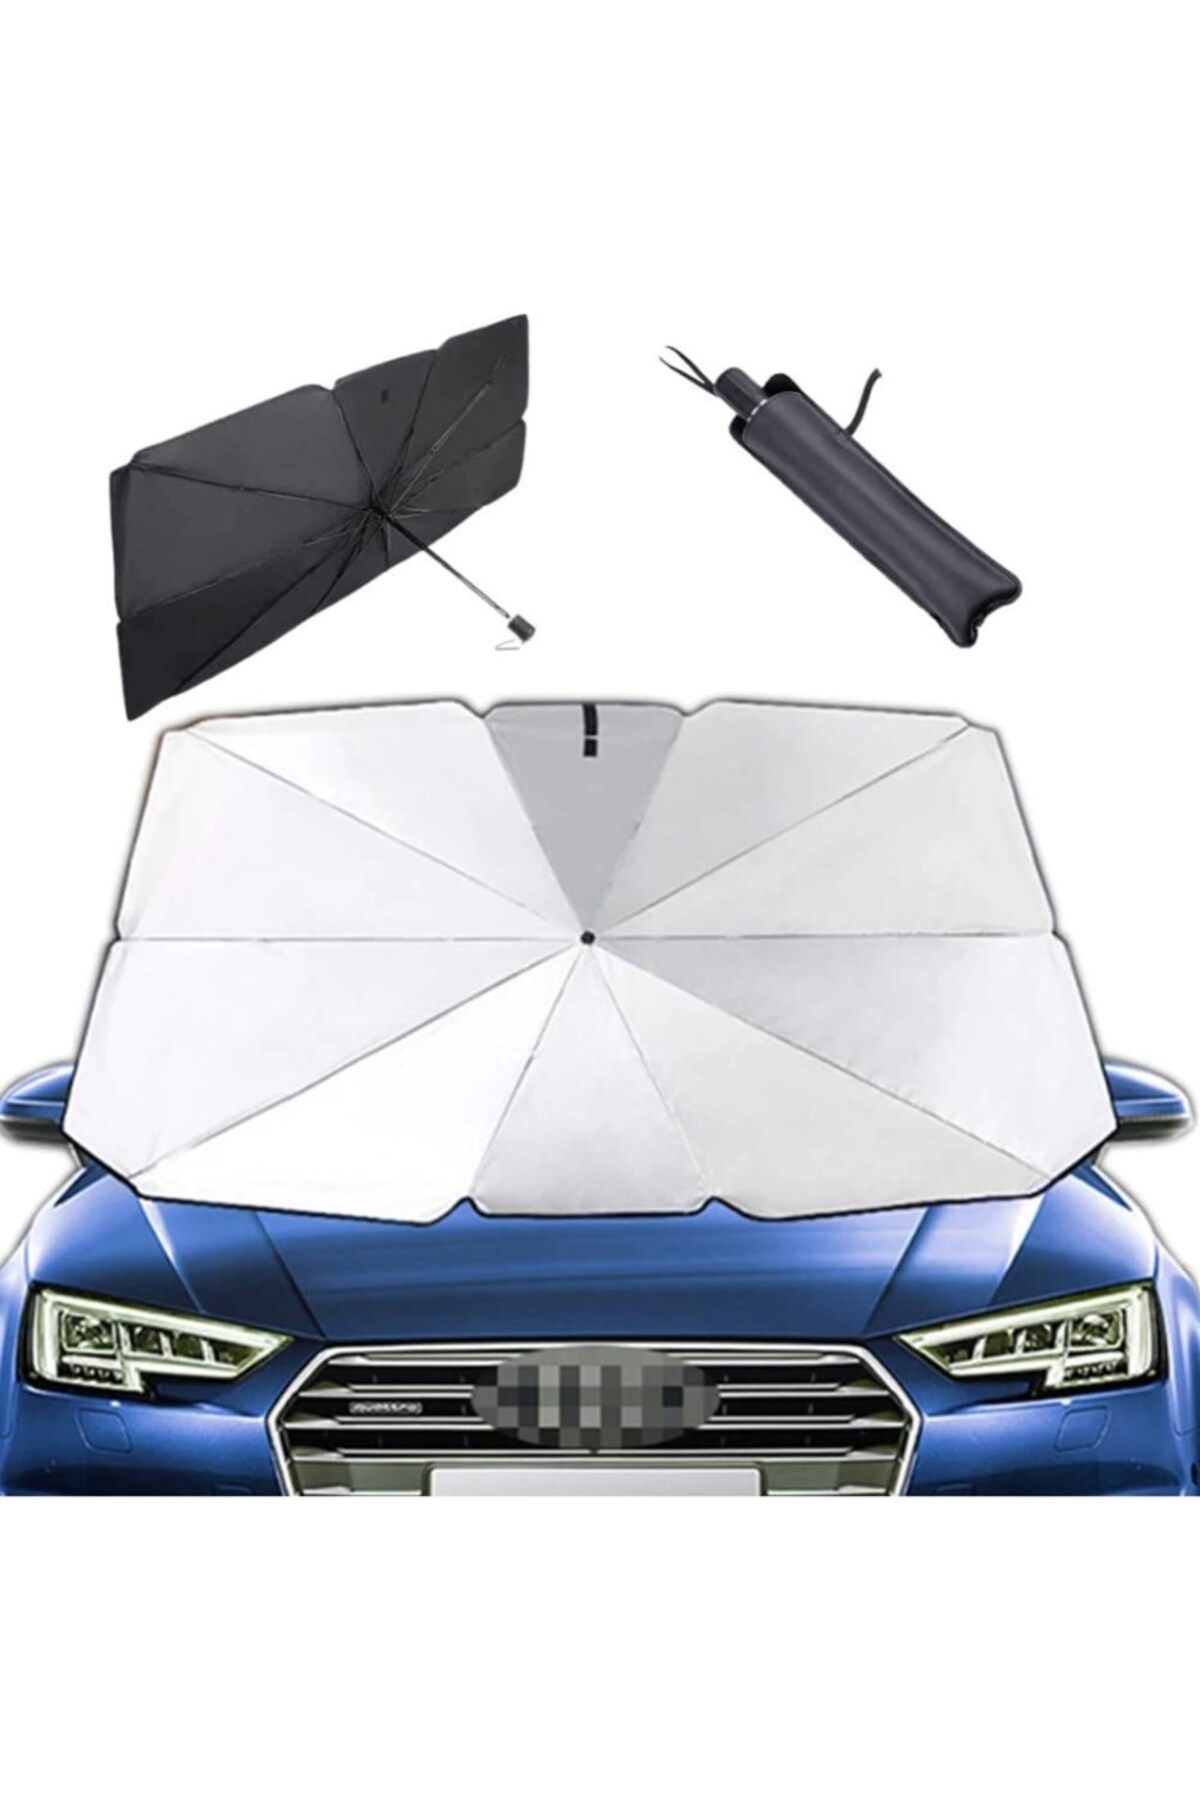 Techmaster Araç Oto Güneşlik Katlanabilir Şemsiye Ön Cam Güneşlik 125cm-65cm